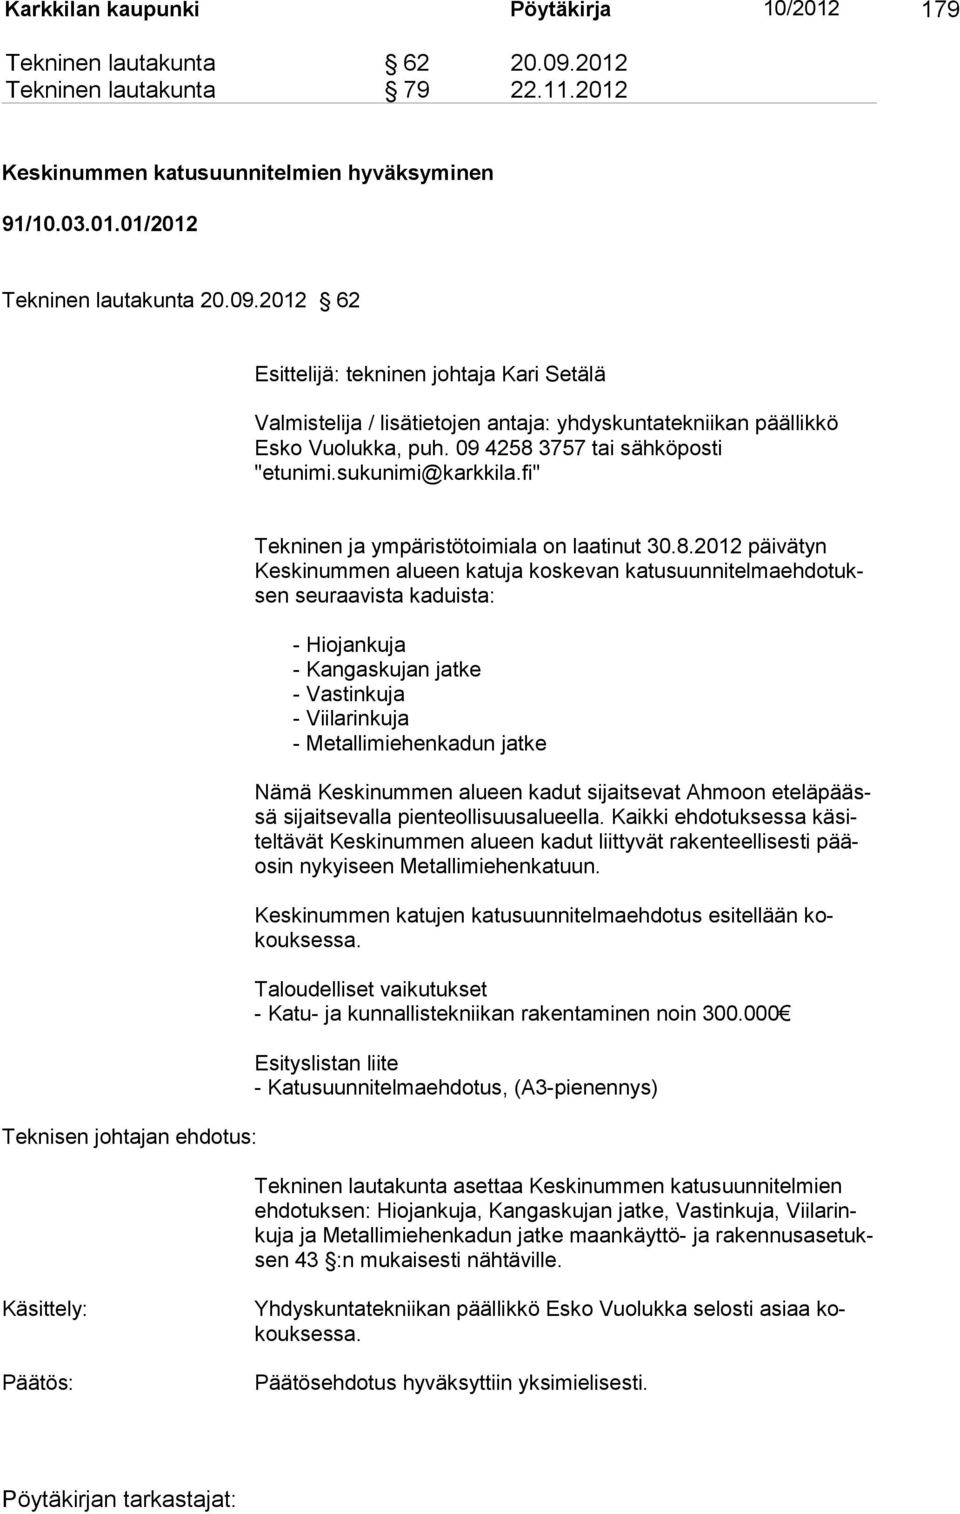 2012 62 Esittelijä: tekninen johtaja Kari Setälä Valmistelija / lisätietojen antaja: yhdyskuntateknii kan päällik kö Esko Vuo lukka, puh. 09 4258 3757 tai sähköposti "etunimi.sukunimi@karkkila.